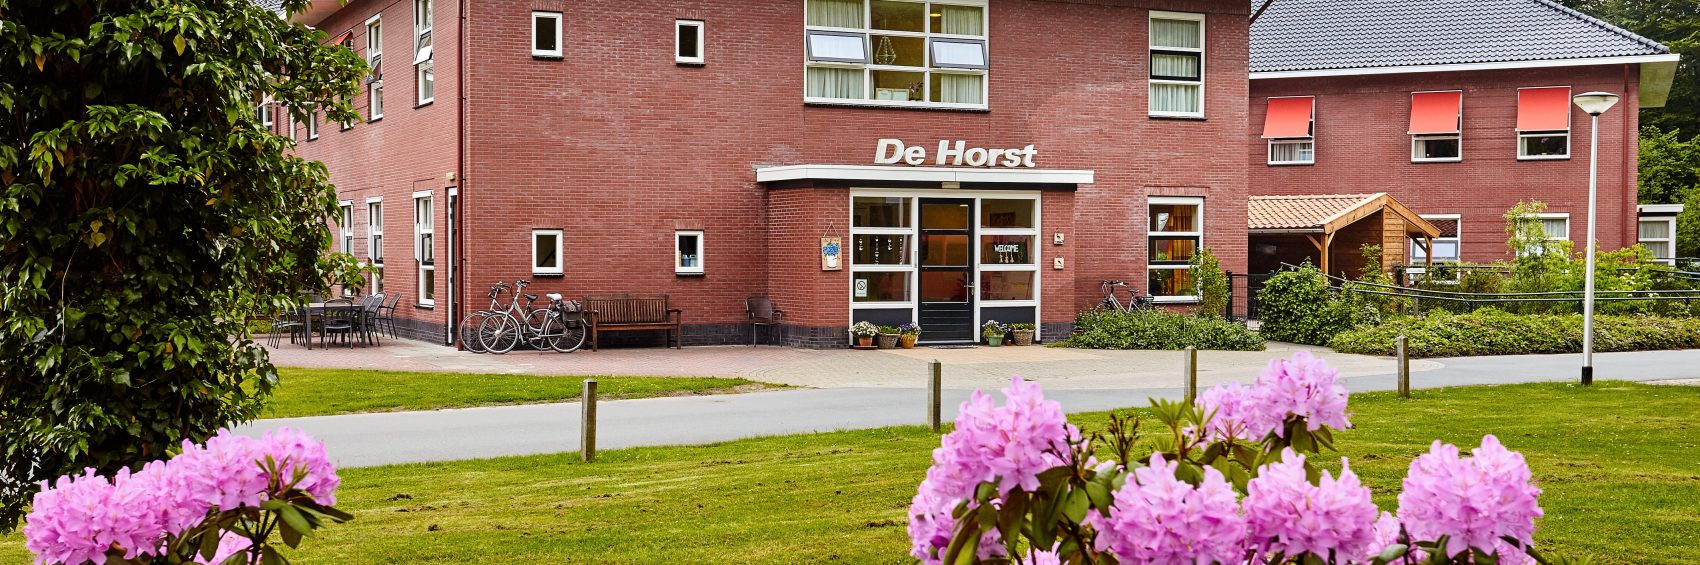 De Horst ingang